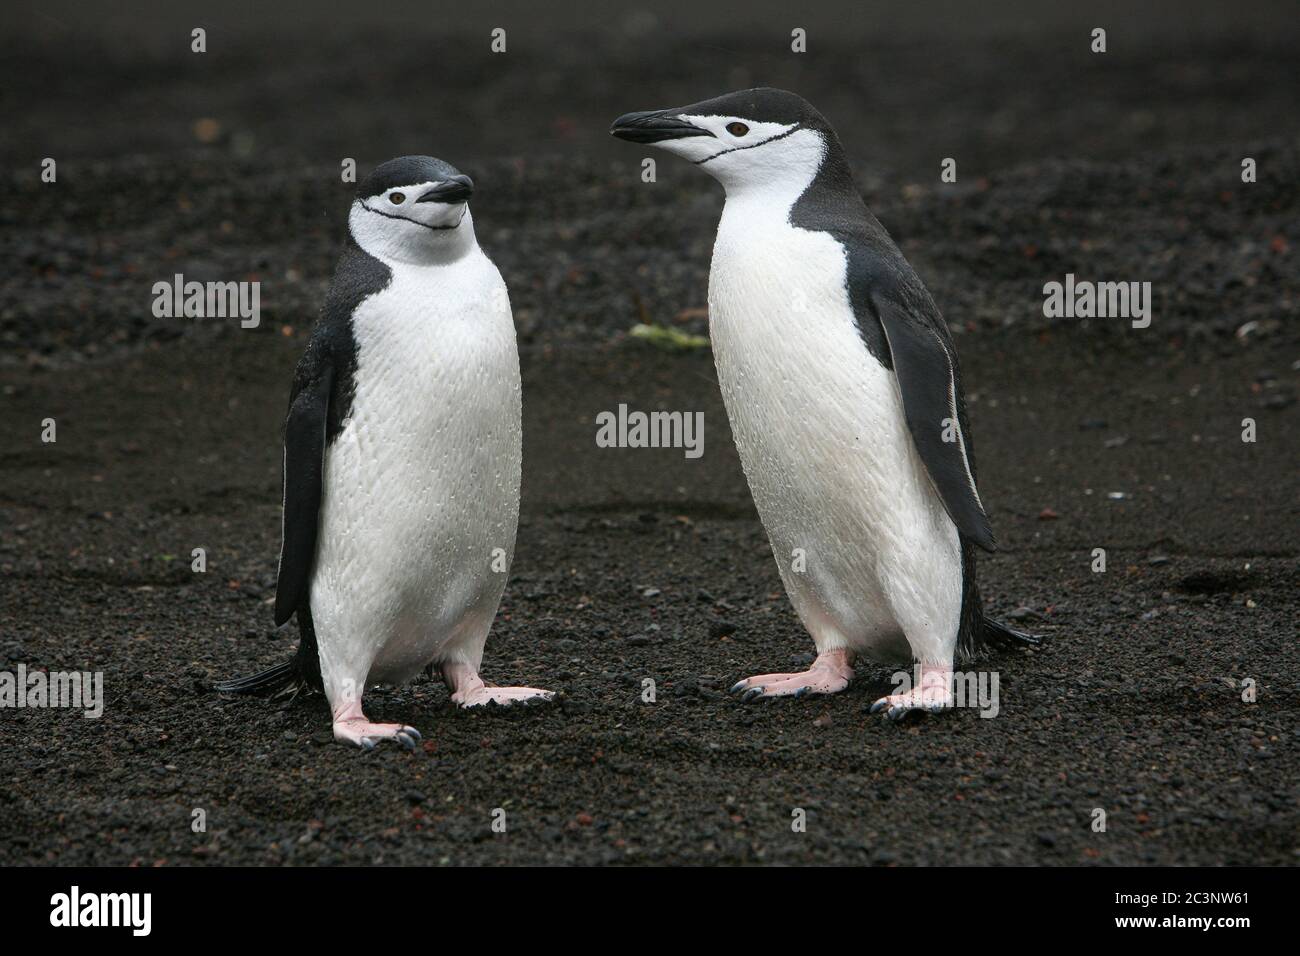 Kinnriemen Pinguine (Pygoscelis antarctica), auch bekannt als Steinknacker Pinguine aufgrund ihrer harten Ruf, am Strand von Telefon Bay in der Antarktis. Stockfoto